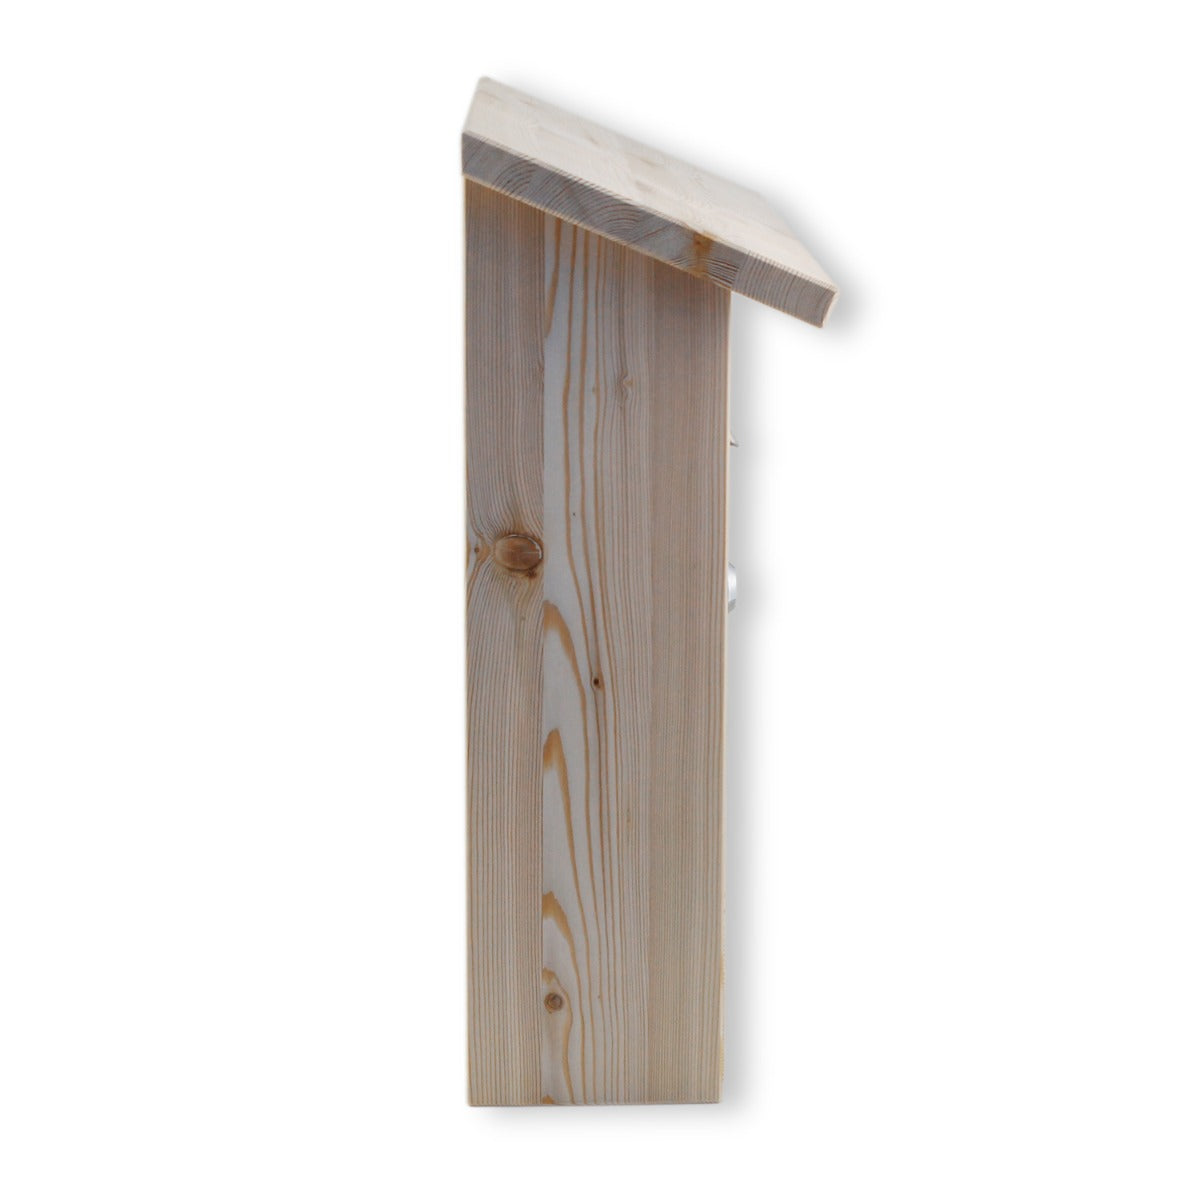 Briefkasten aus Holz Lärchenholz mit Sichtfenster Made in Germany